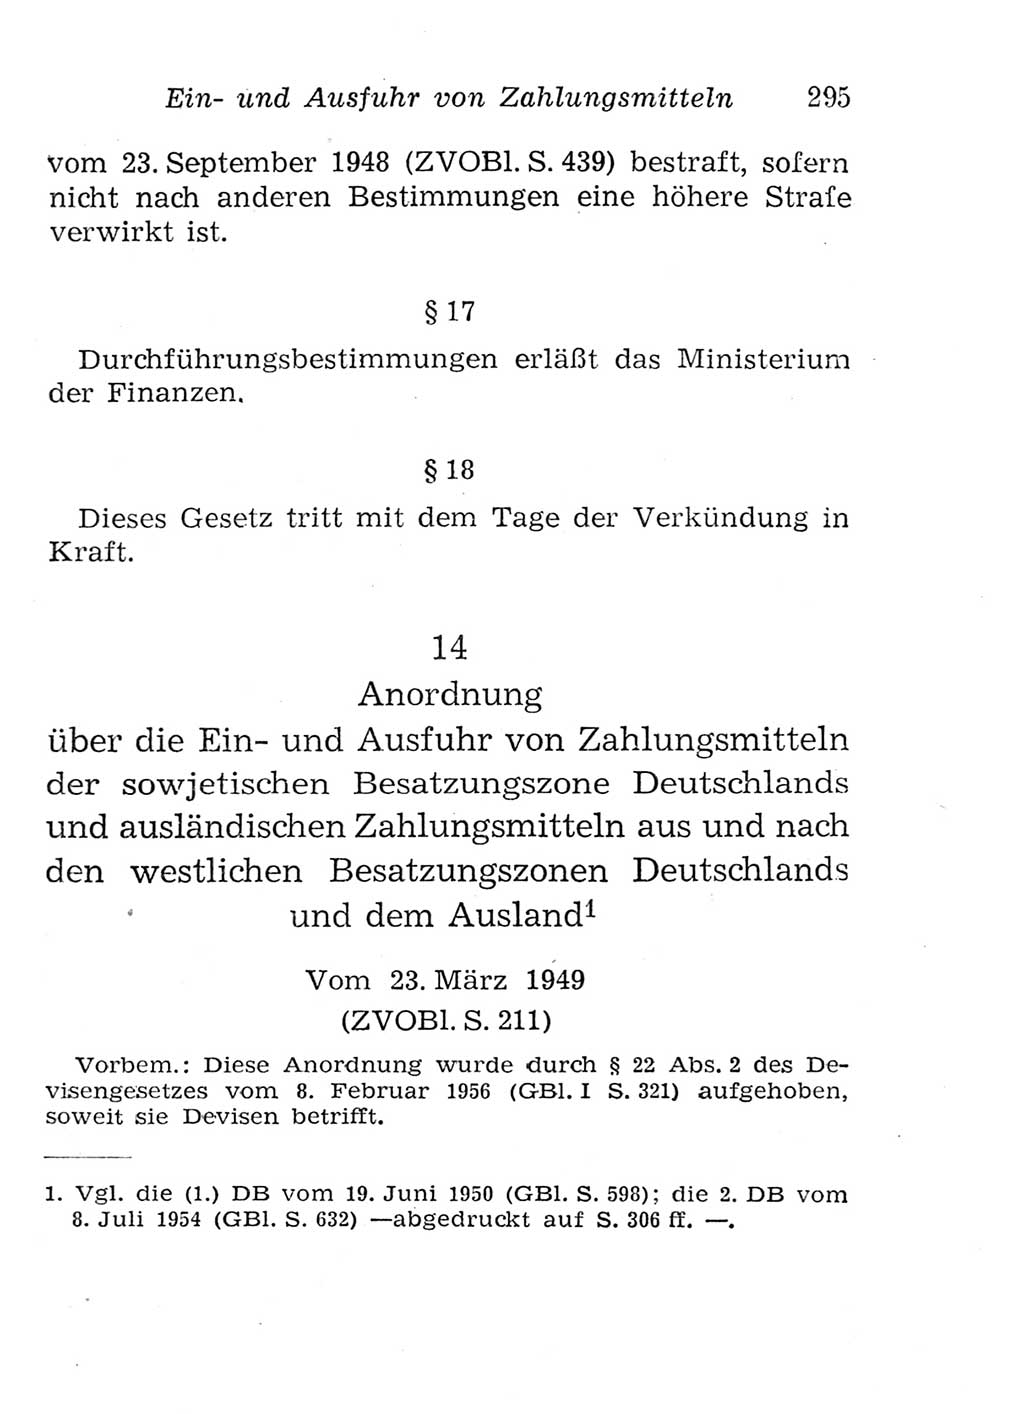 Strafgesetzbuch (StGB) und andere Strafgesetze [Deutsche Demokratische Republik (DDR)] 1957, Seite 295 (StGB Strafges. DDR 1957, S. 295)